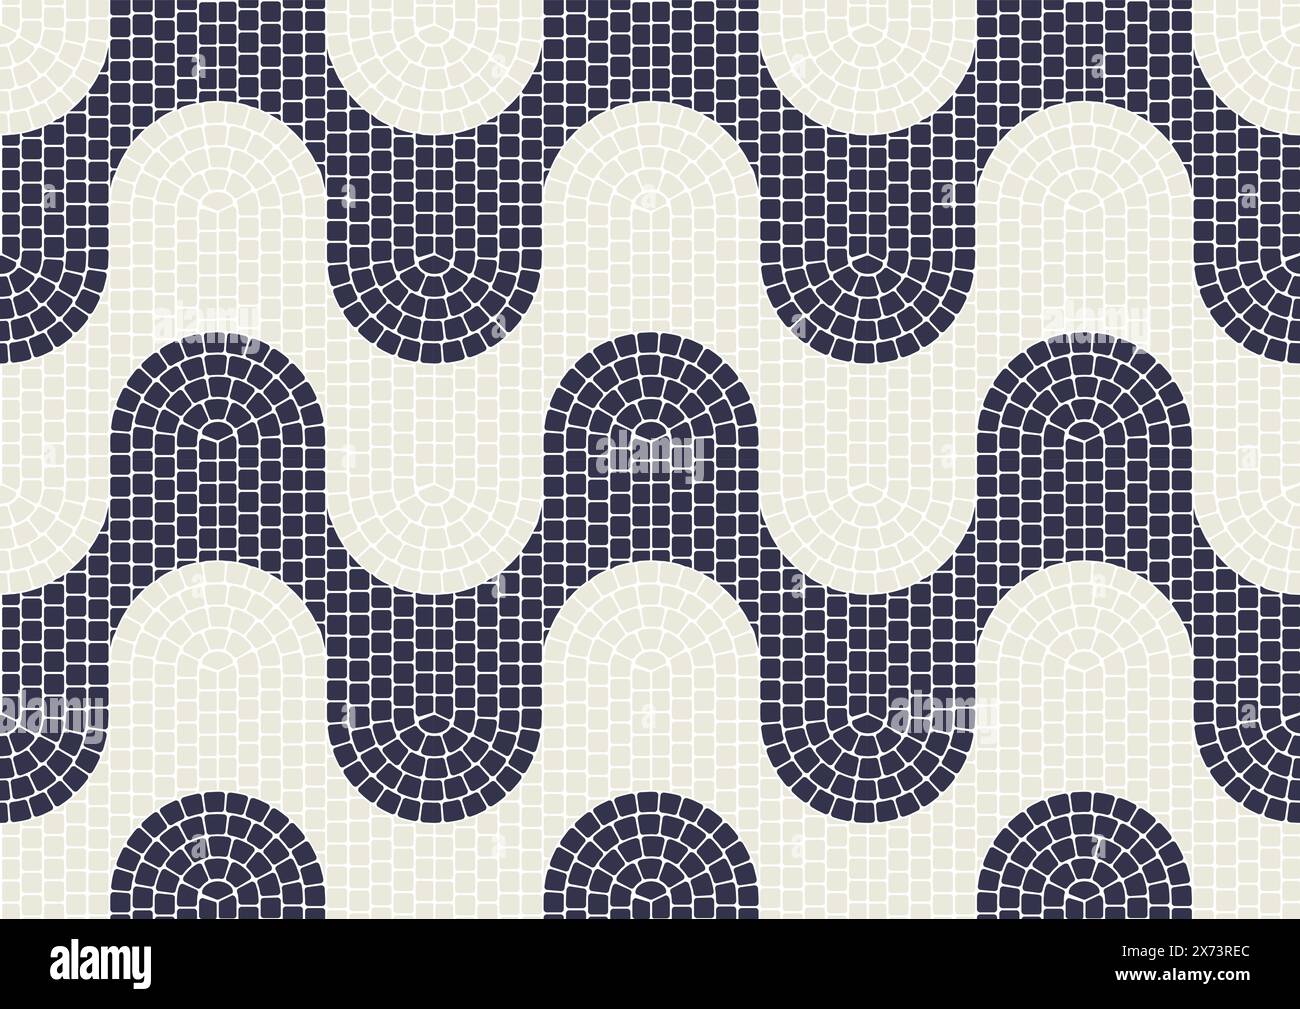 Tuile de pavage en mosaïque ondulée, modèle sans couture avec tessellation de vagues d'eau, pavement en mosaïque portugaise, vecteur Illustration de Vecteur